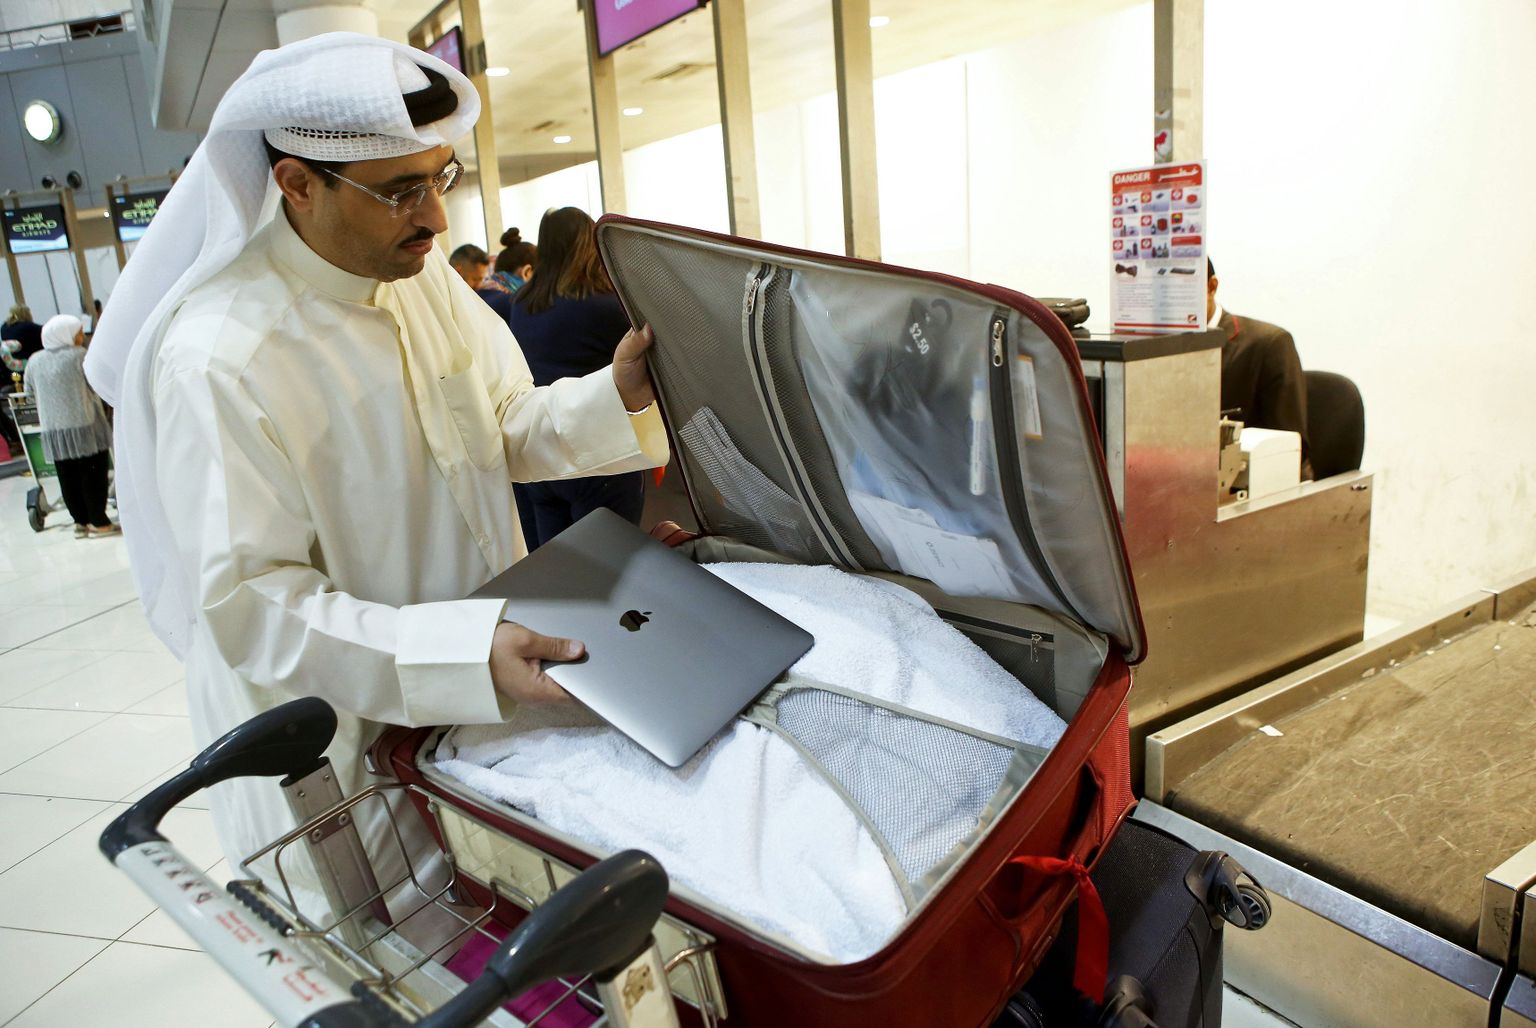 USAsse lendav Kuveidi sotsiaalmeedia aktivist Thamer al-Dakheel Bourashed paneb oma sülearvuti äraantavasse pagasisse Kuveidi rahvusvahelises lennujaamas 23. märtsil, vahetult pärast USA keelu kehtestamist.